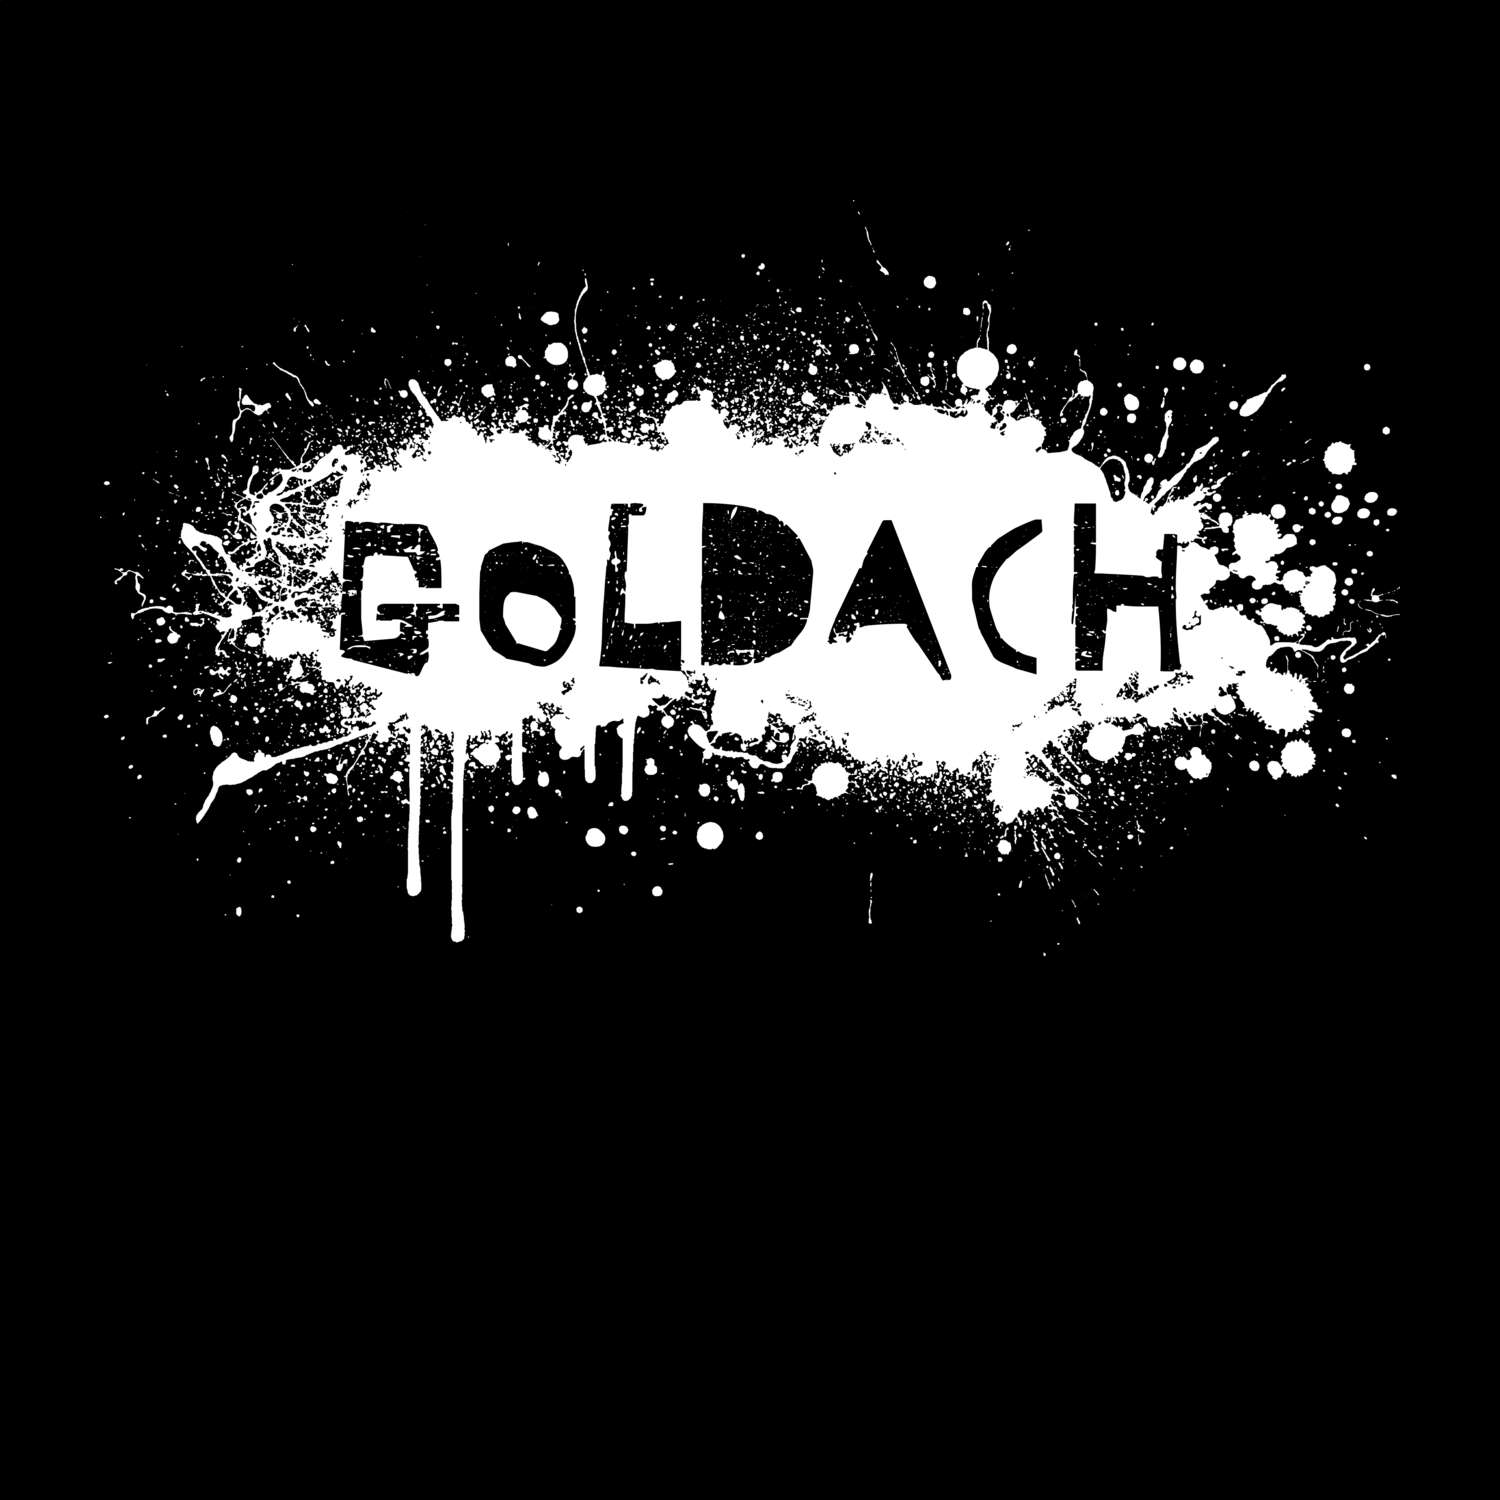 Goldach T-Shirt »Paint Splash Punk«